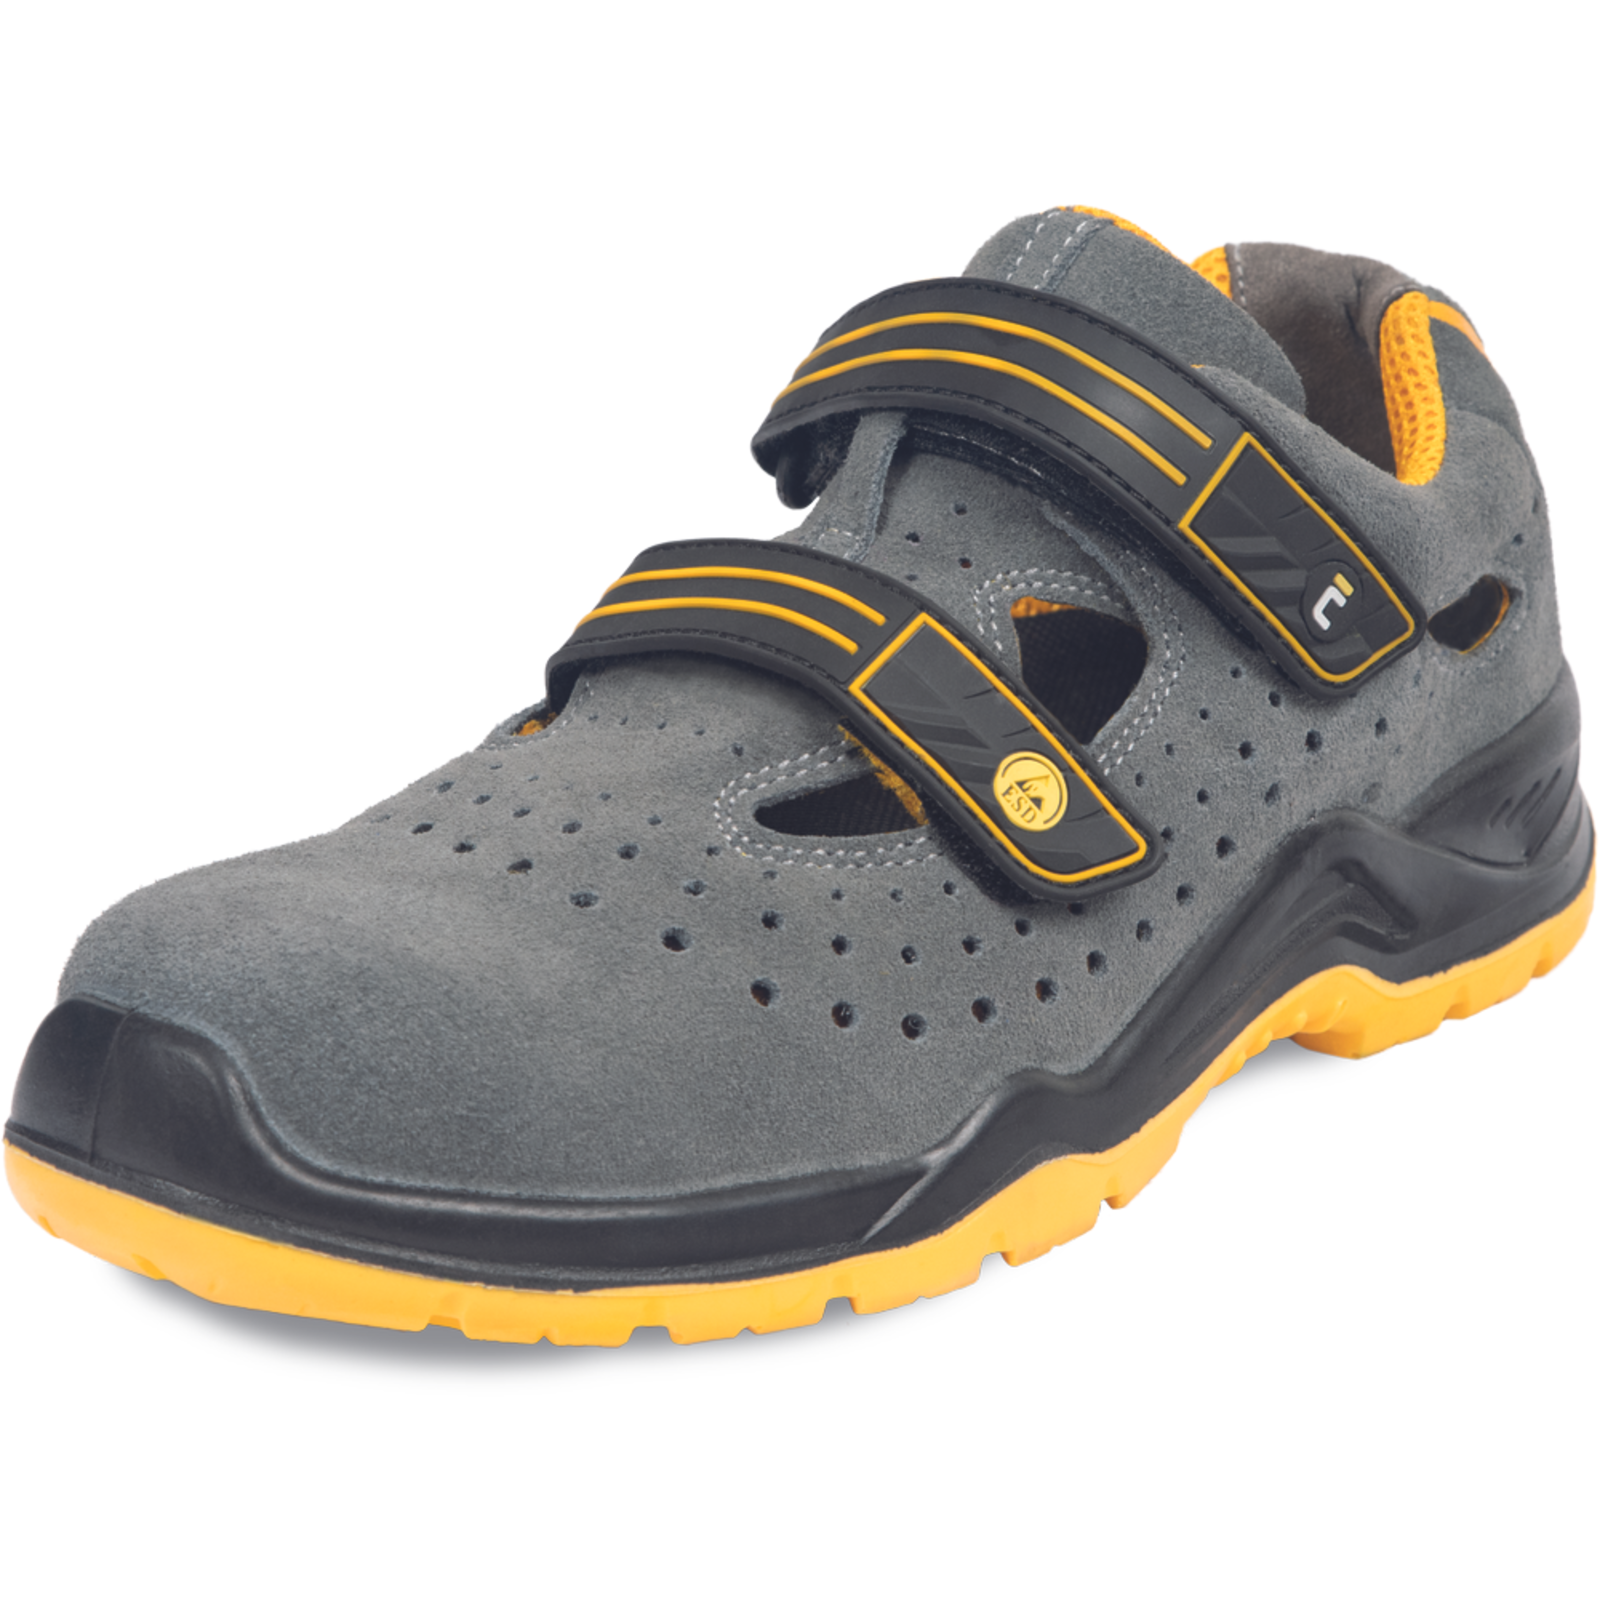 Pracovné bezpečnostné sandále Cerva Yuwill MF ESD S1P SRC - veľkosť: 38, farba: sivá/žltá